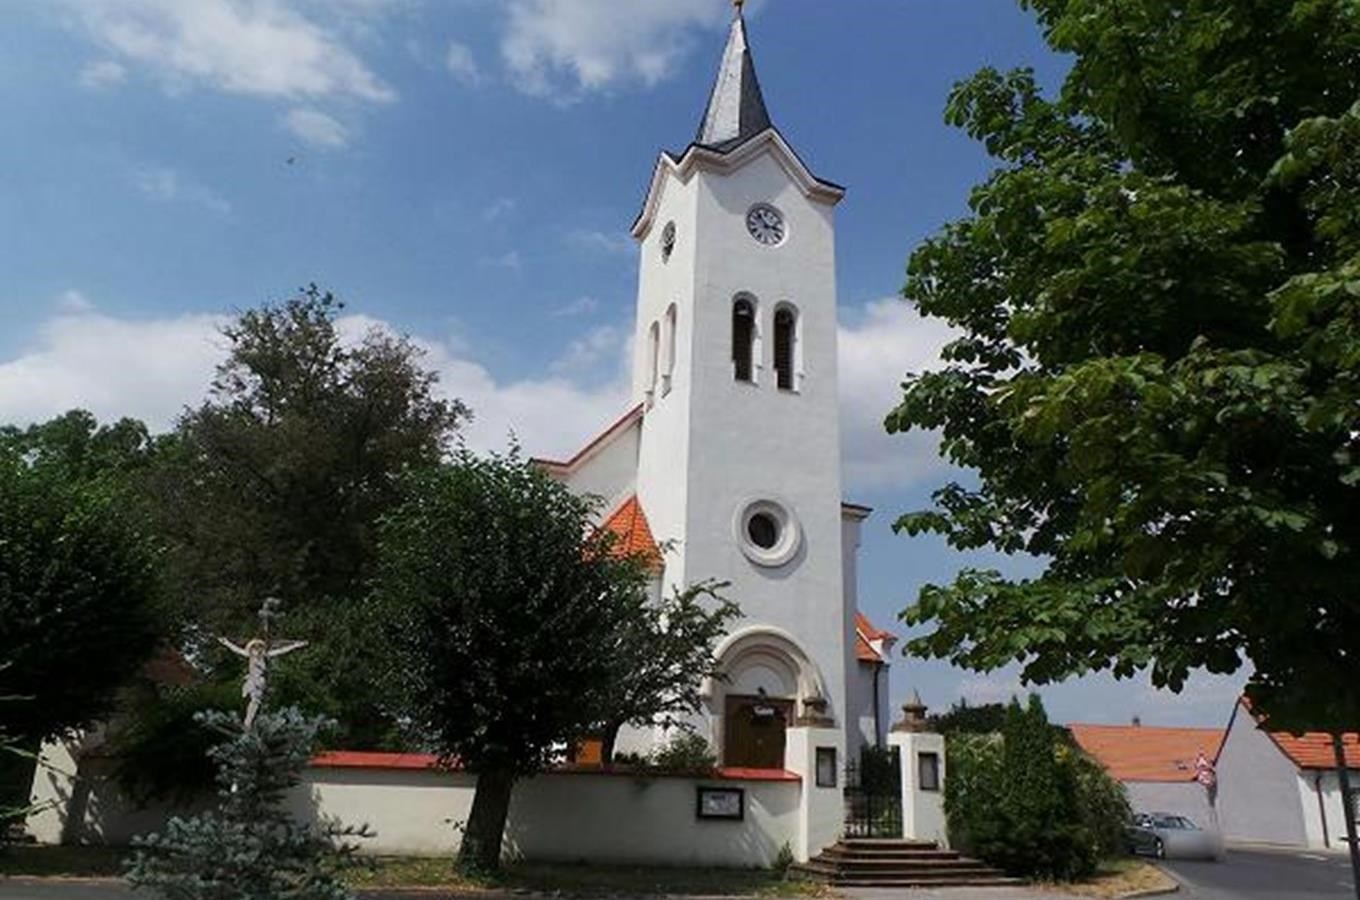 Kostel sv. Prokopa v Čestlicích 